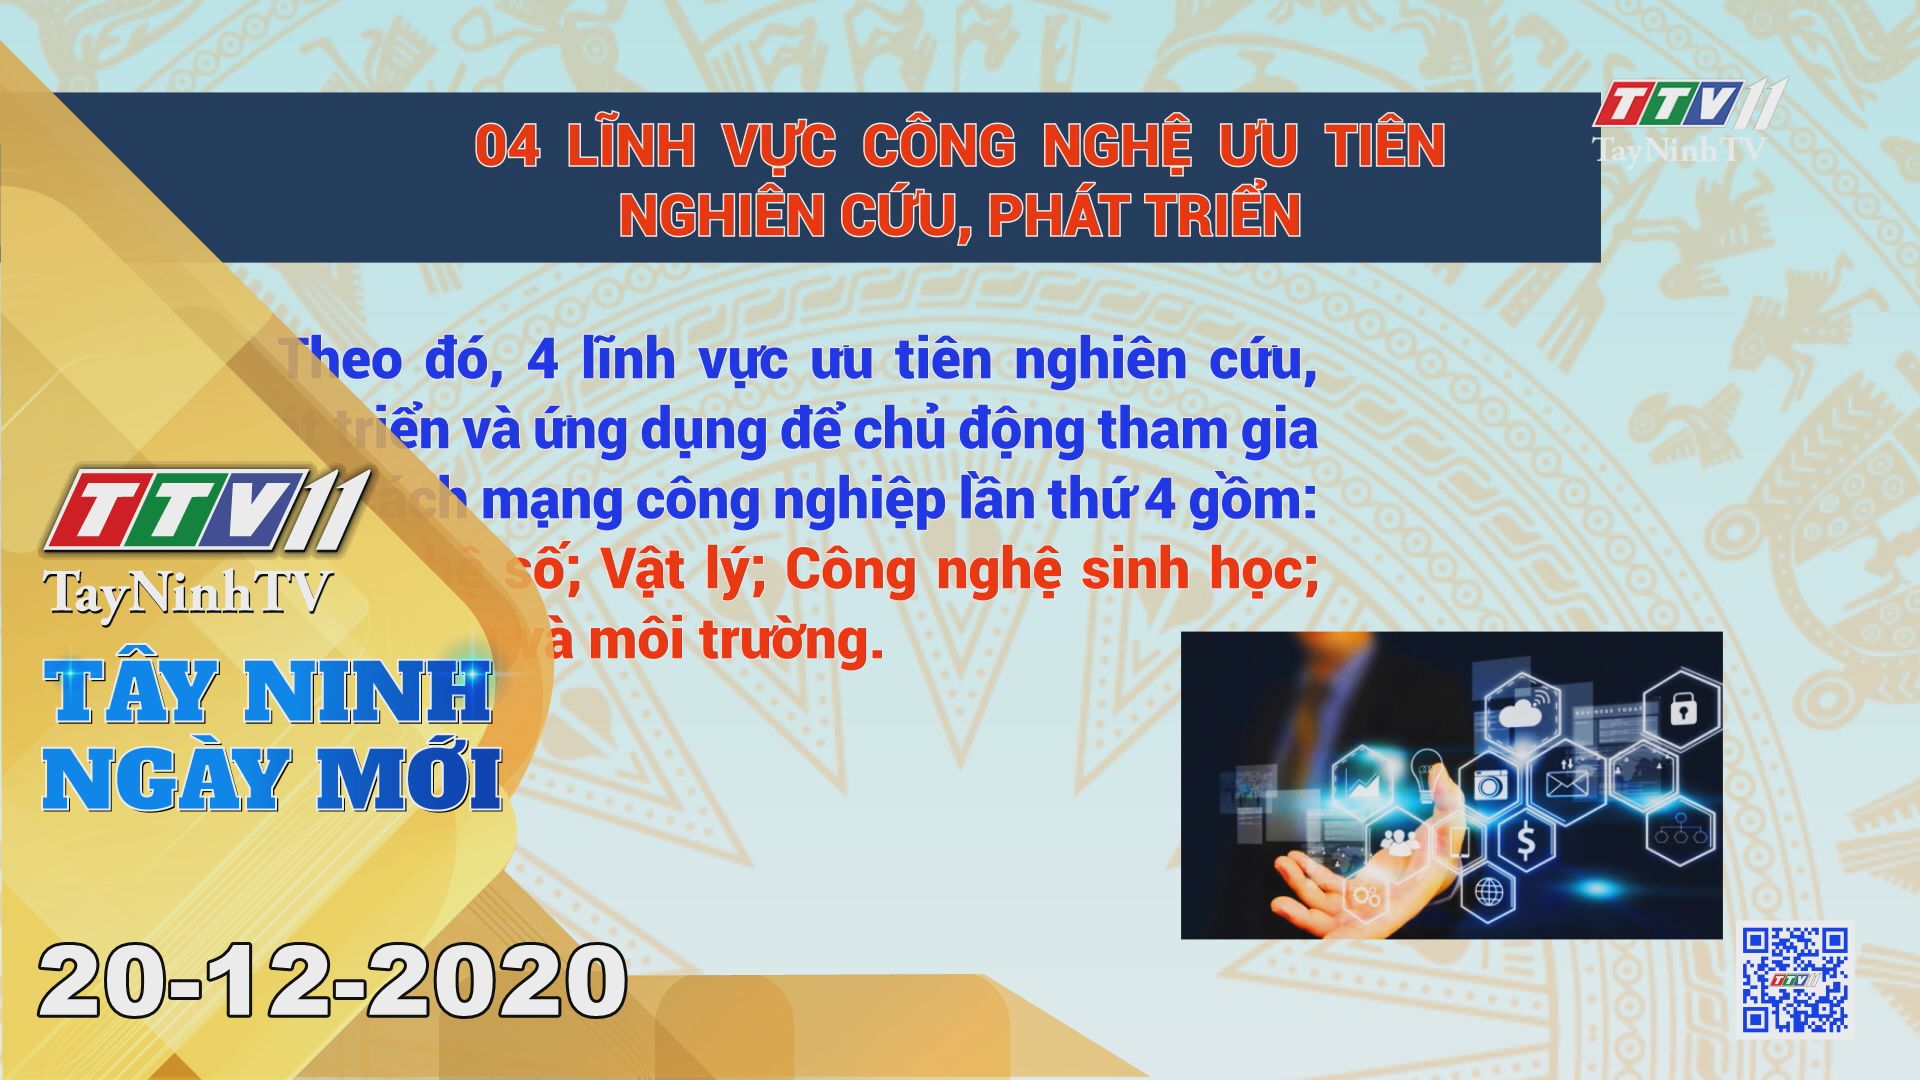 Tây Ninh Ngày Mới 20-12-2020 | Tin tức hôm nay | TayNinhTV 